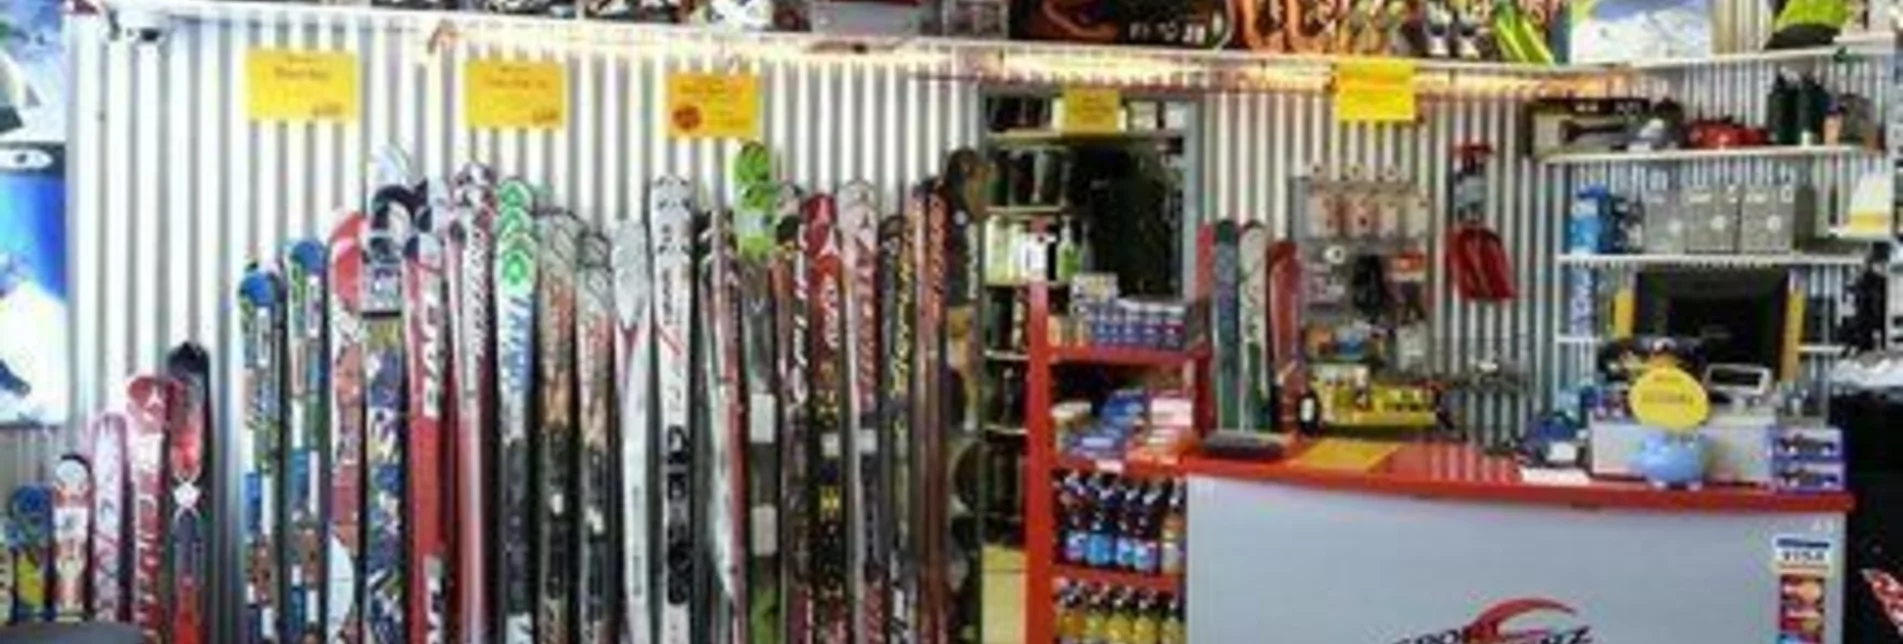 Sledding Ski rental at Sport Scherz Planneralm - Touren-Impression #1